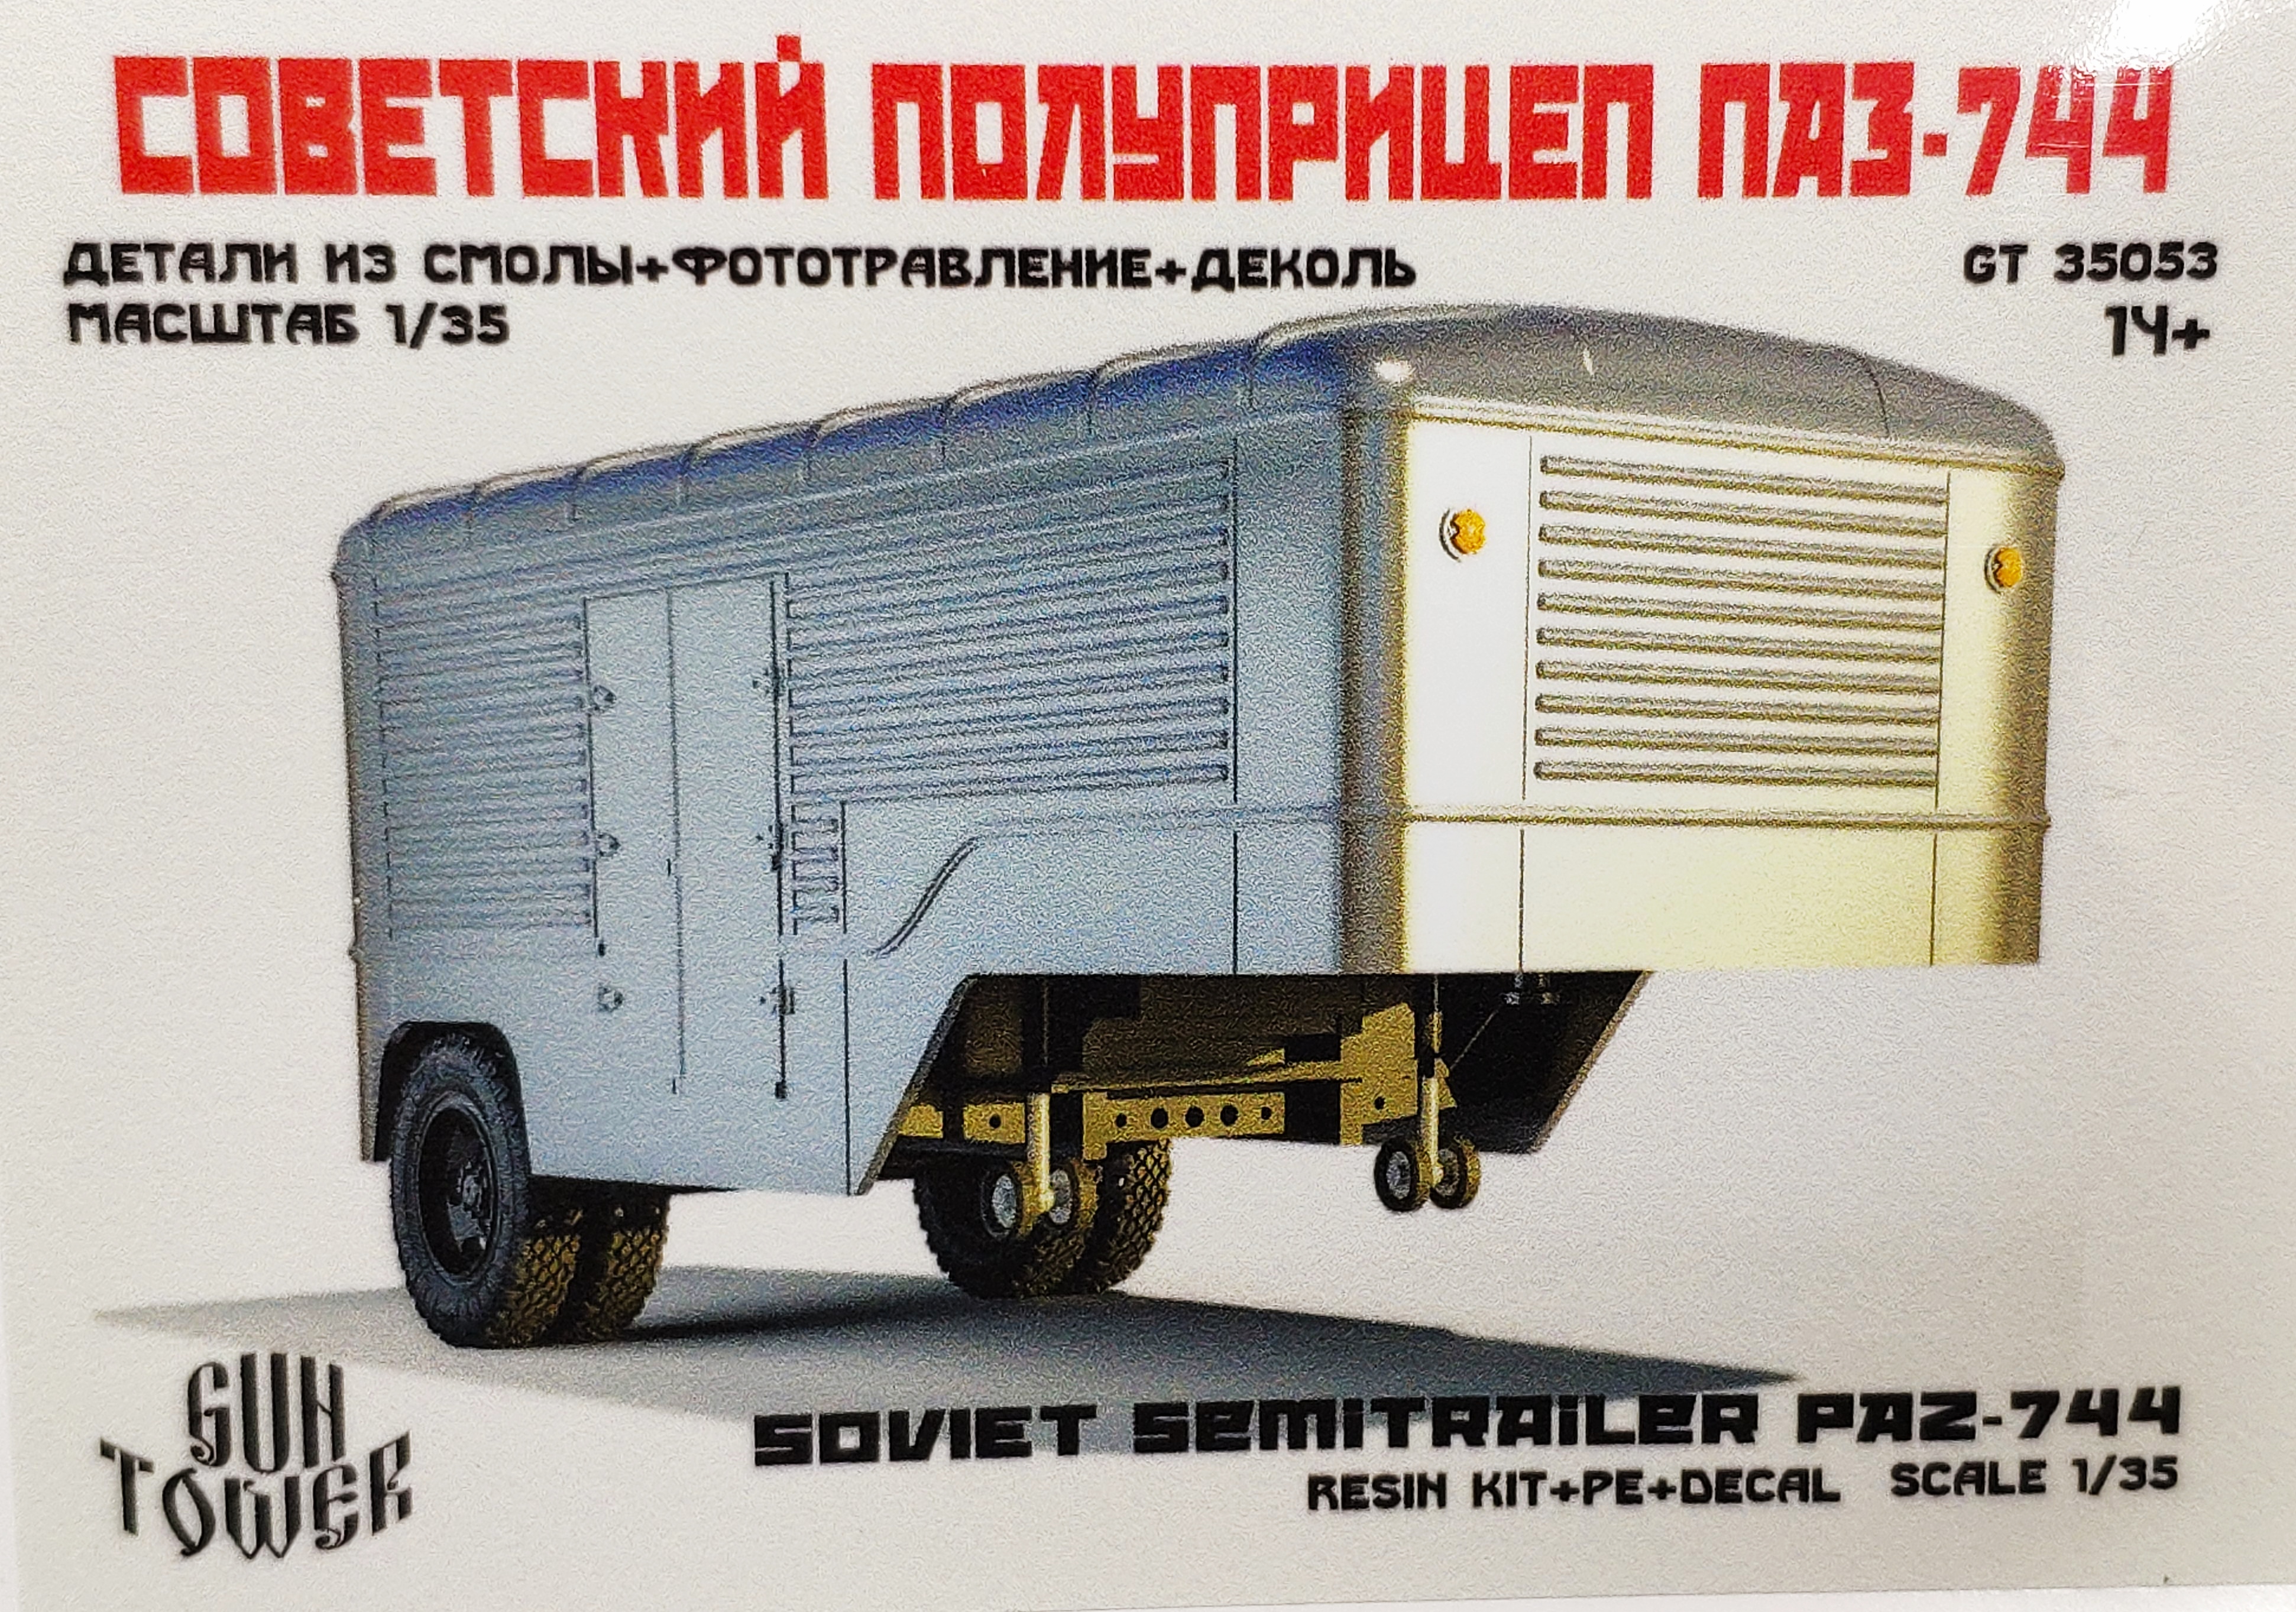 Soviet semitrailer PAZ 744